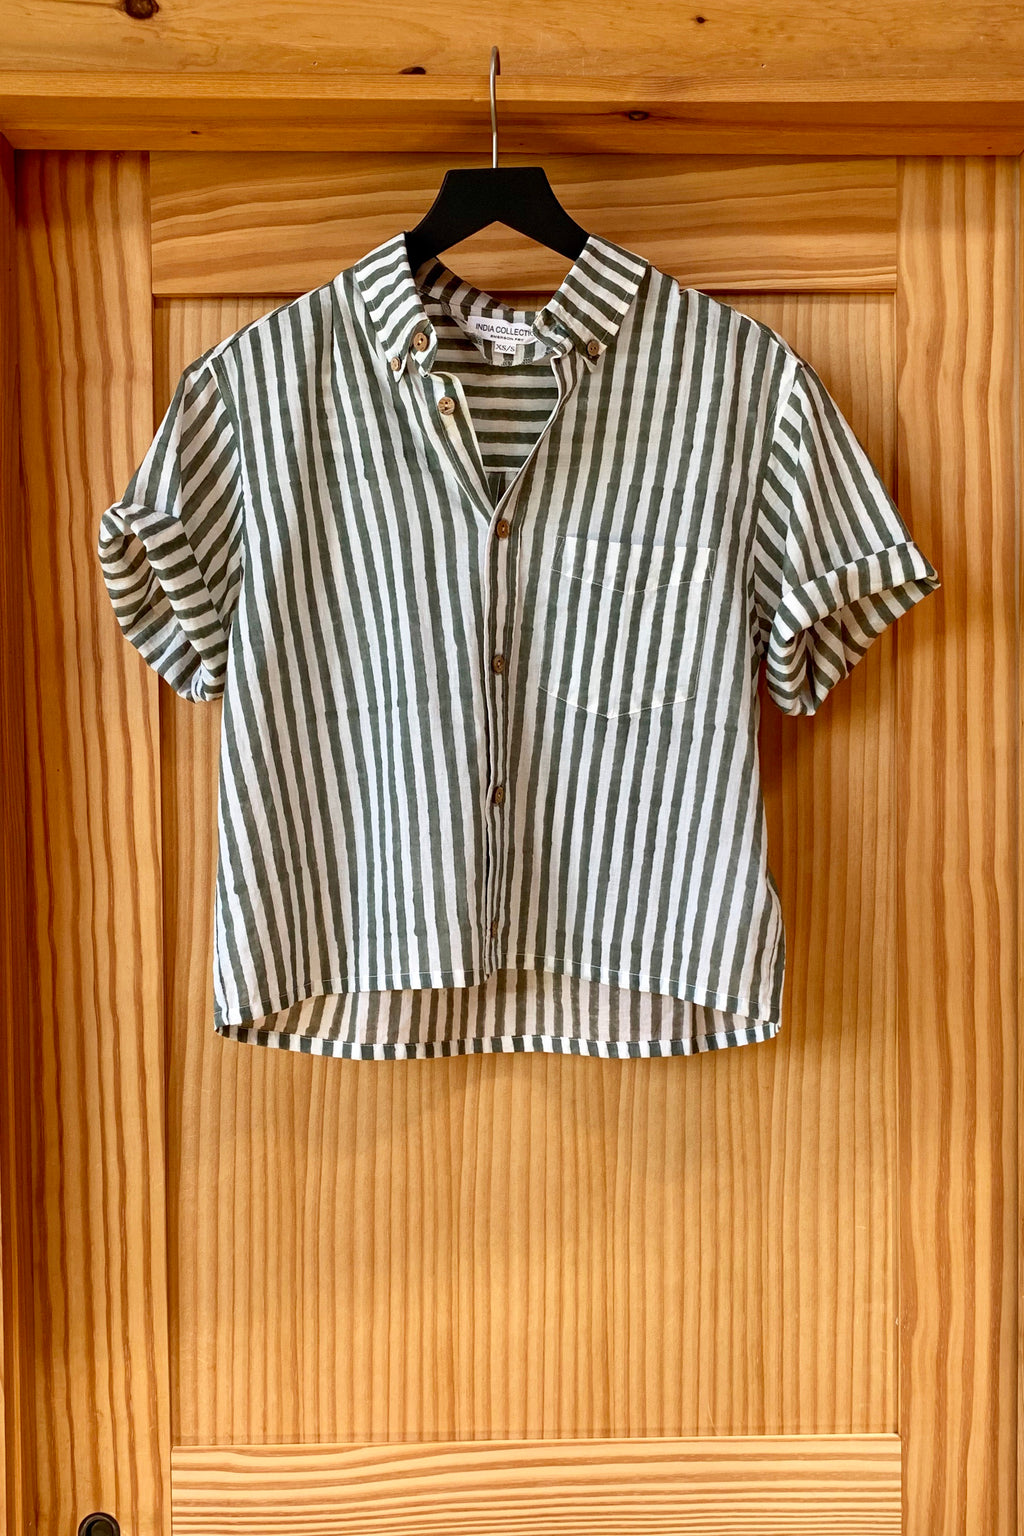 Boxy Shirt - Moss Stripe Lightweight Cotton Organic